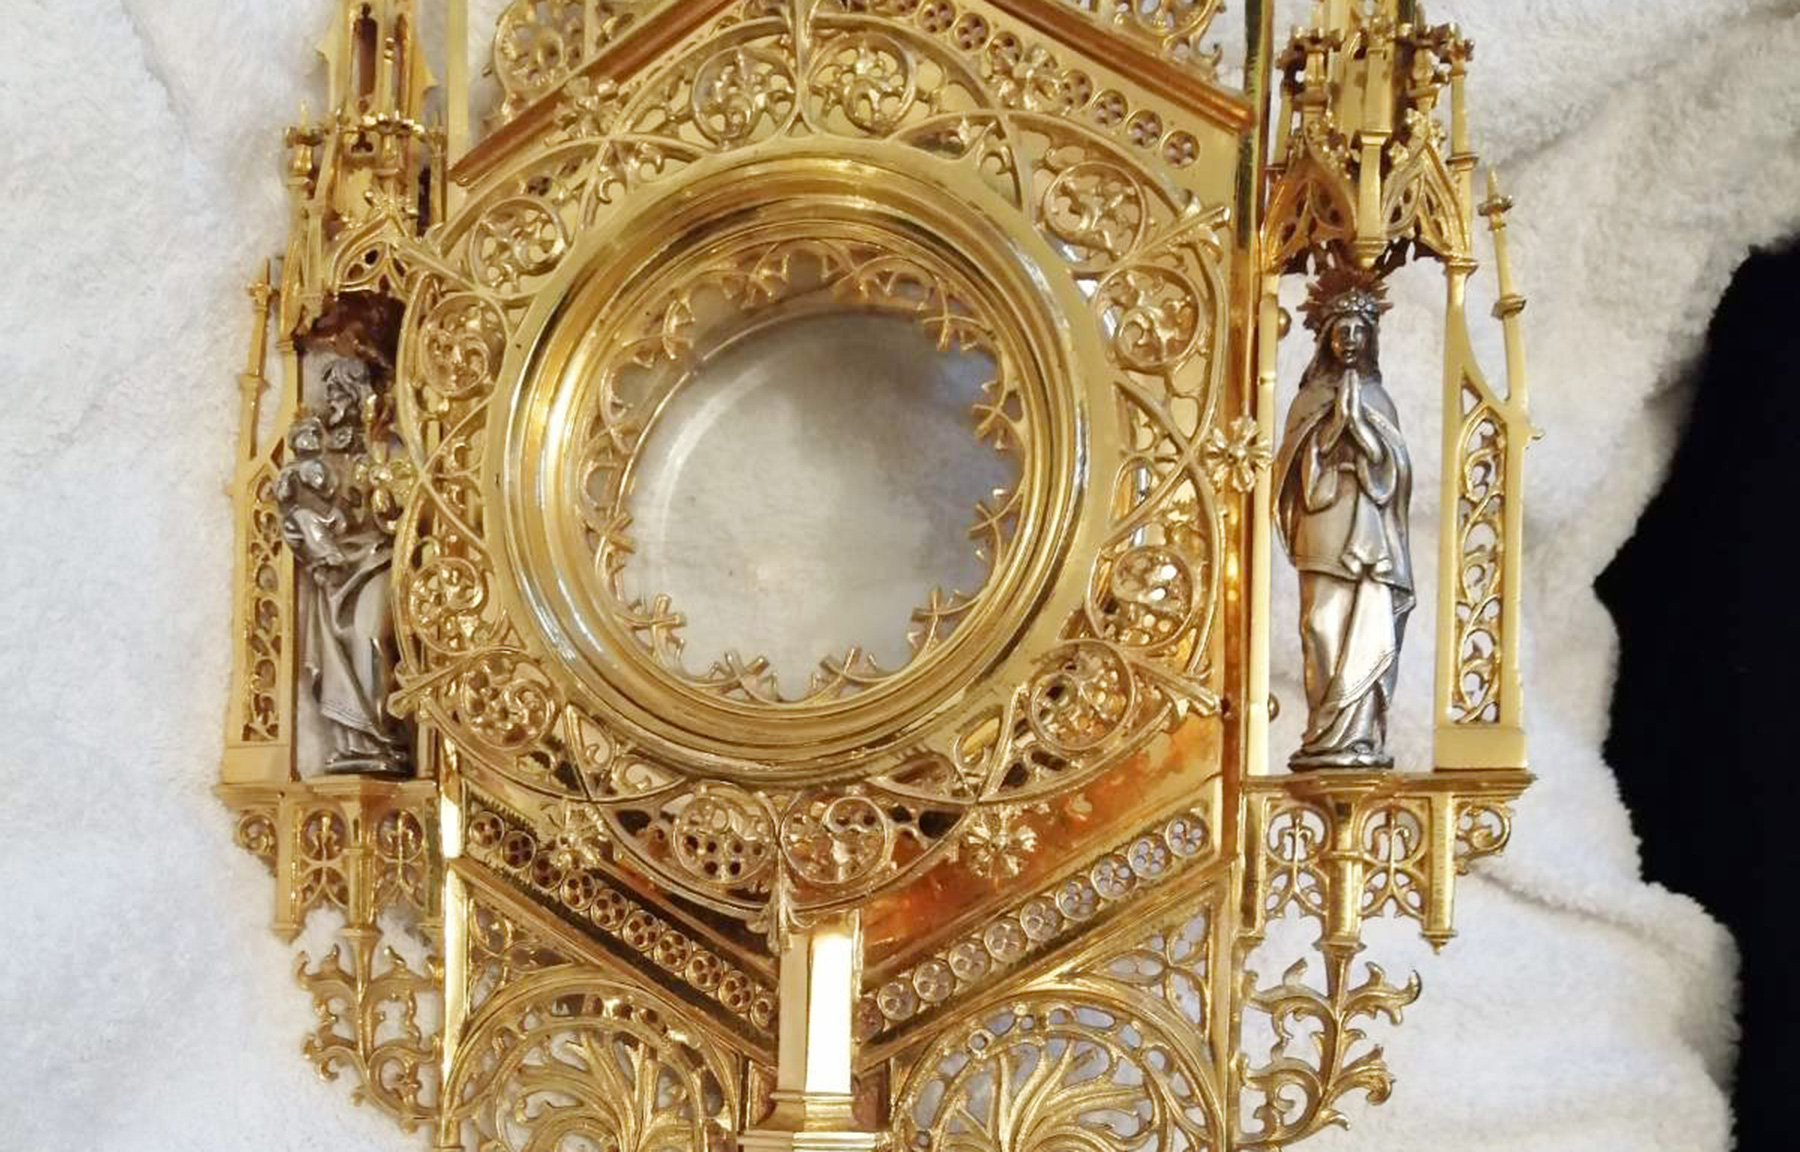 Pronađeni skupoceni religiozni predmeti, ukradeni 2018. godine, iz katoličke crkve u Beču